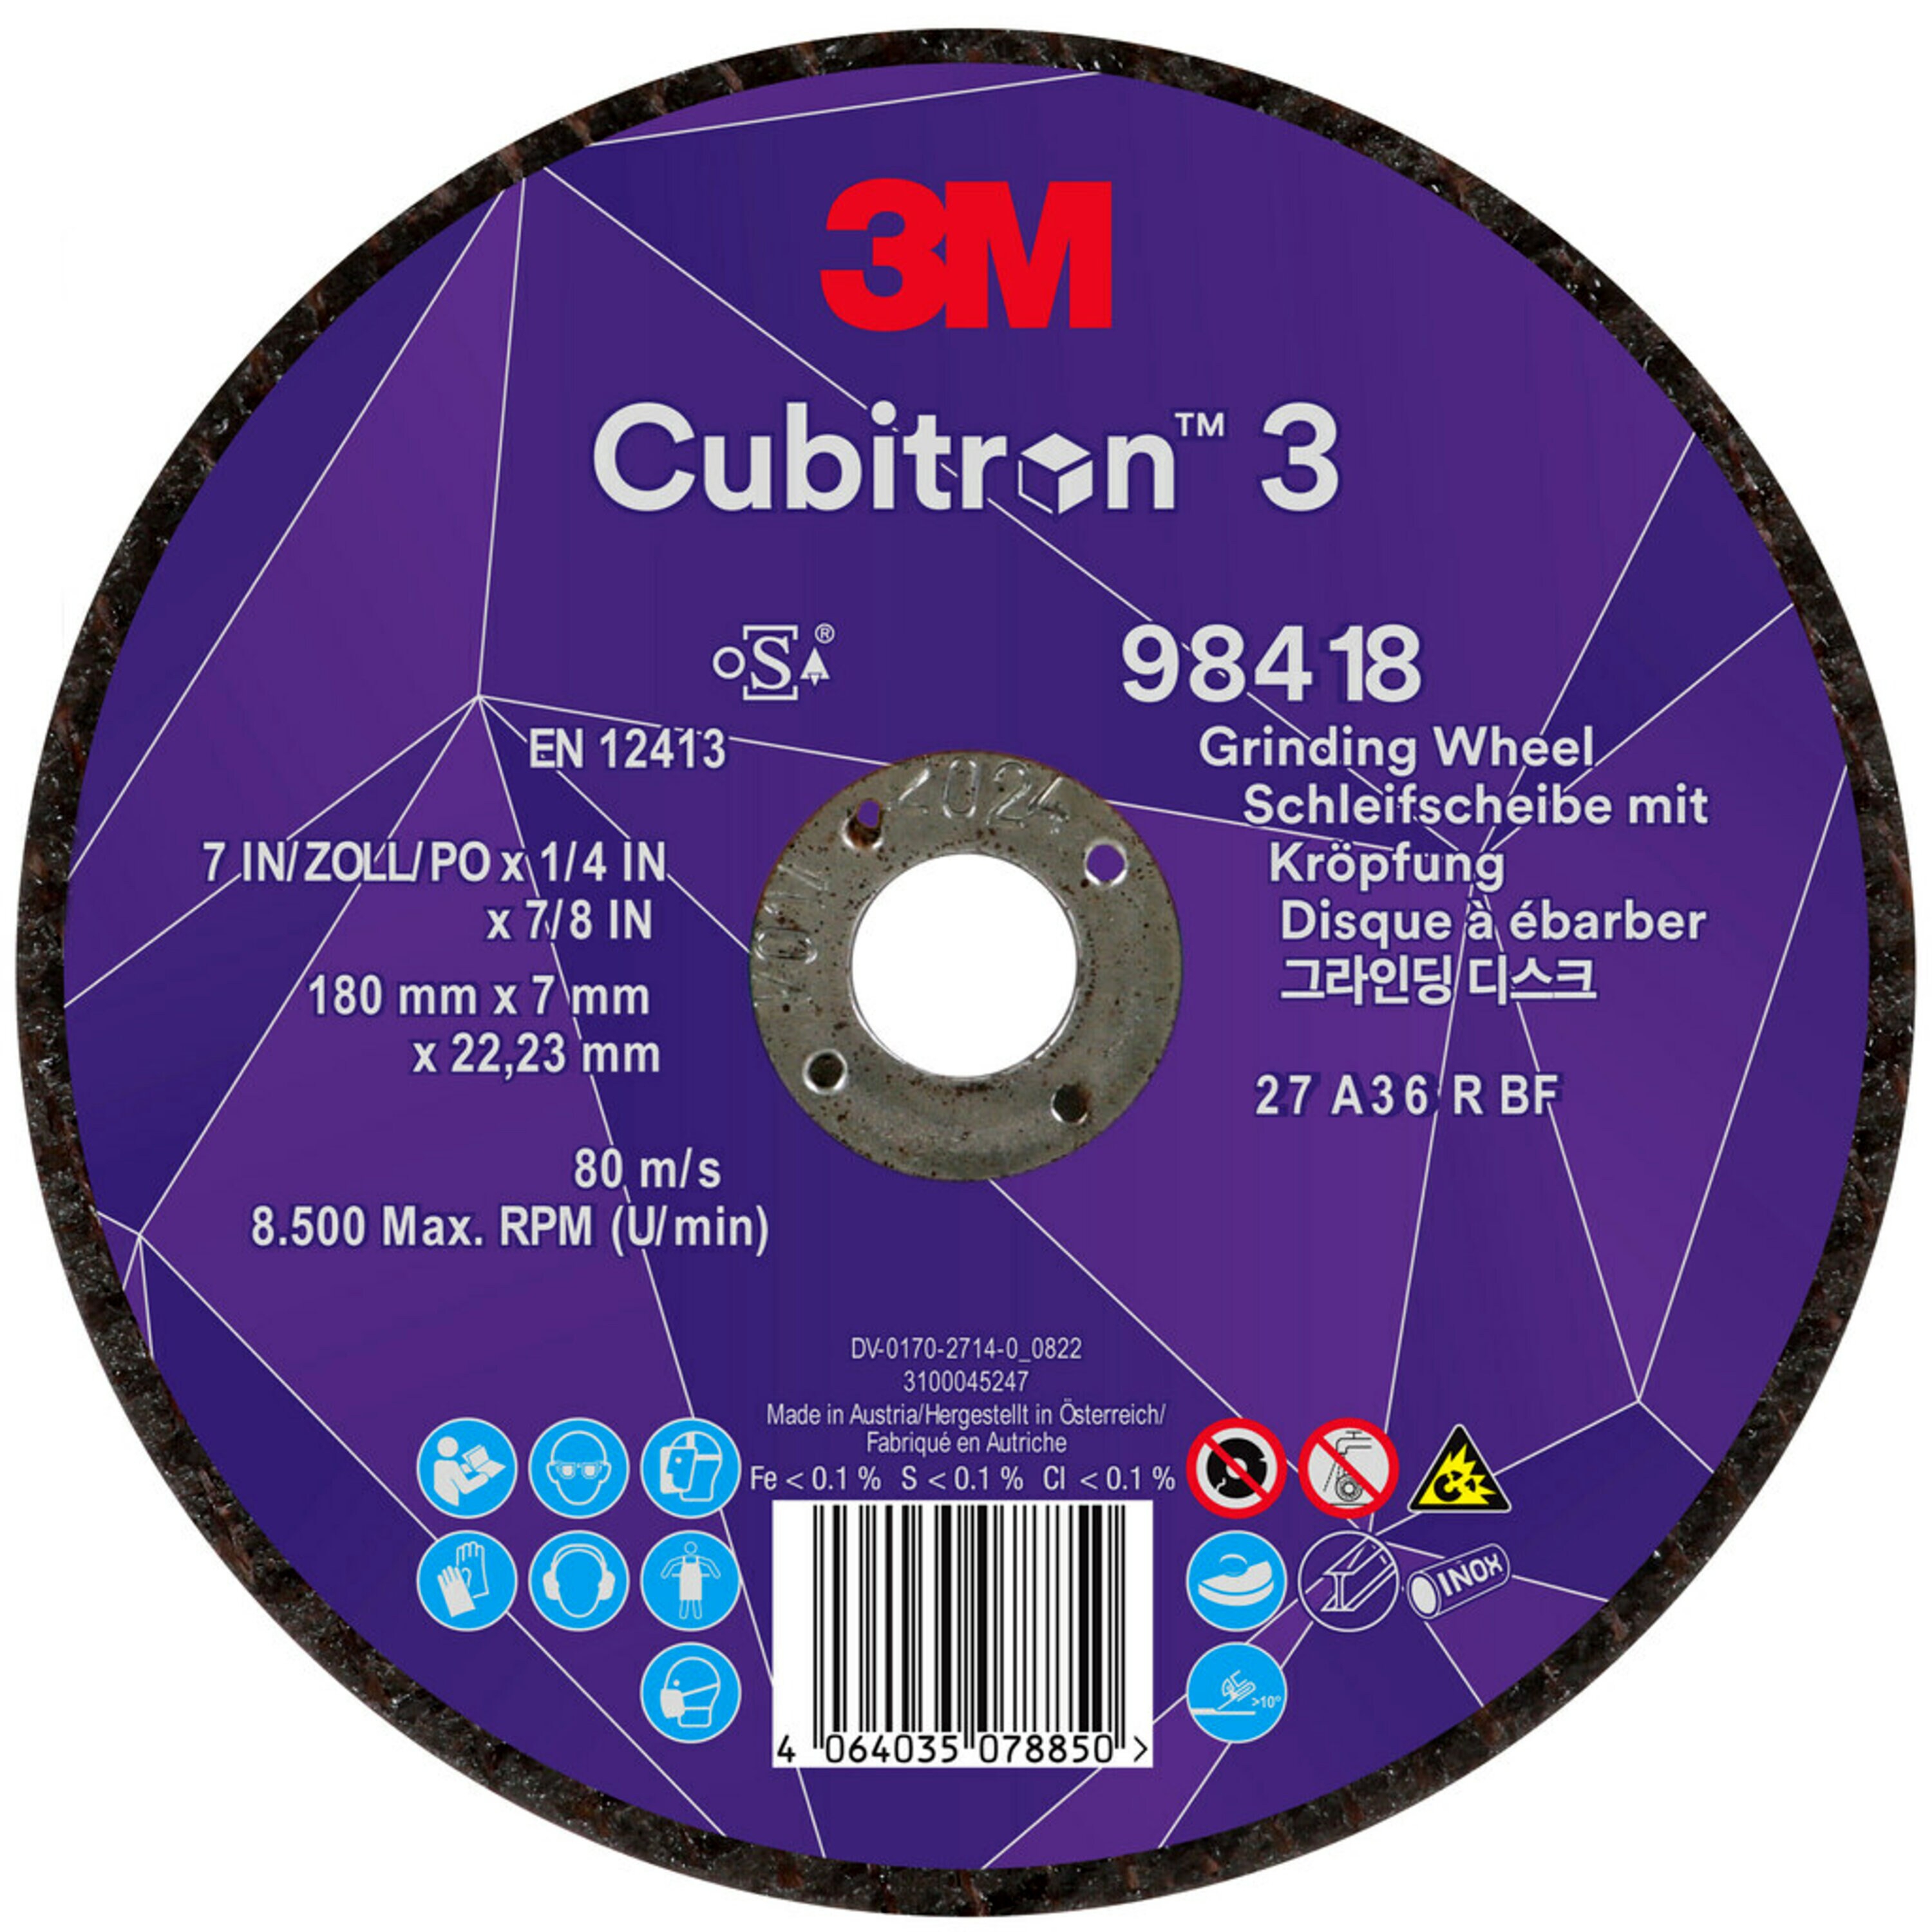 3M Cubitron 3 disque à ébarber, 180 mm, 7,0 mm, 22,23 mm, 36 , type 27 # 98418